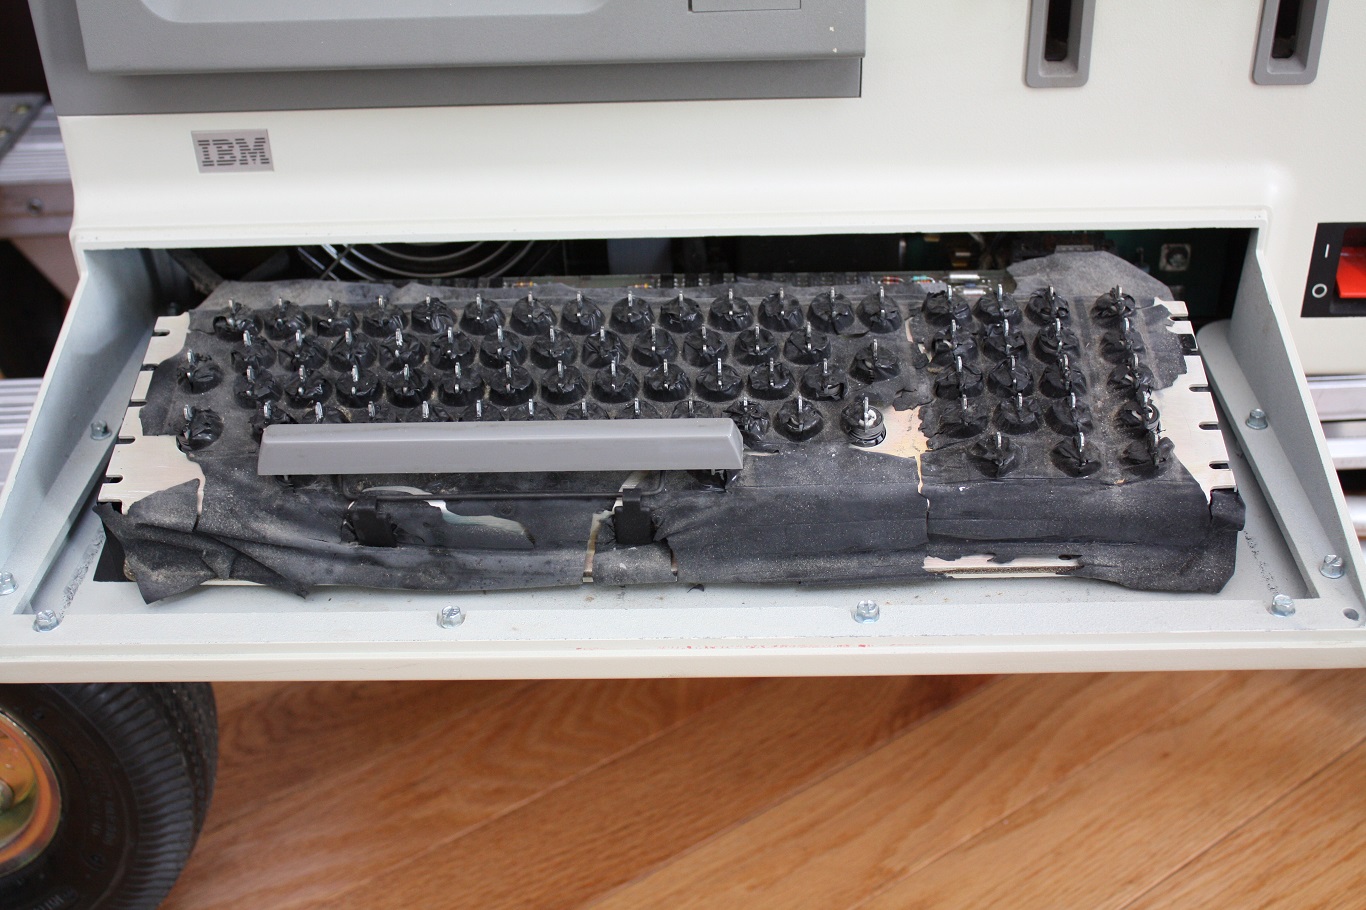 IBM 5120 - keyboard membrane close up